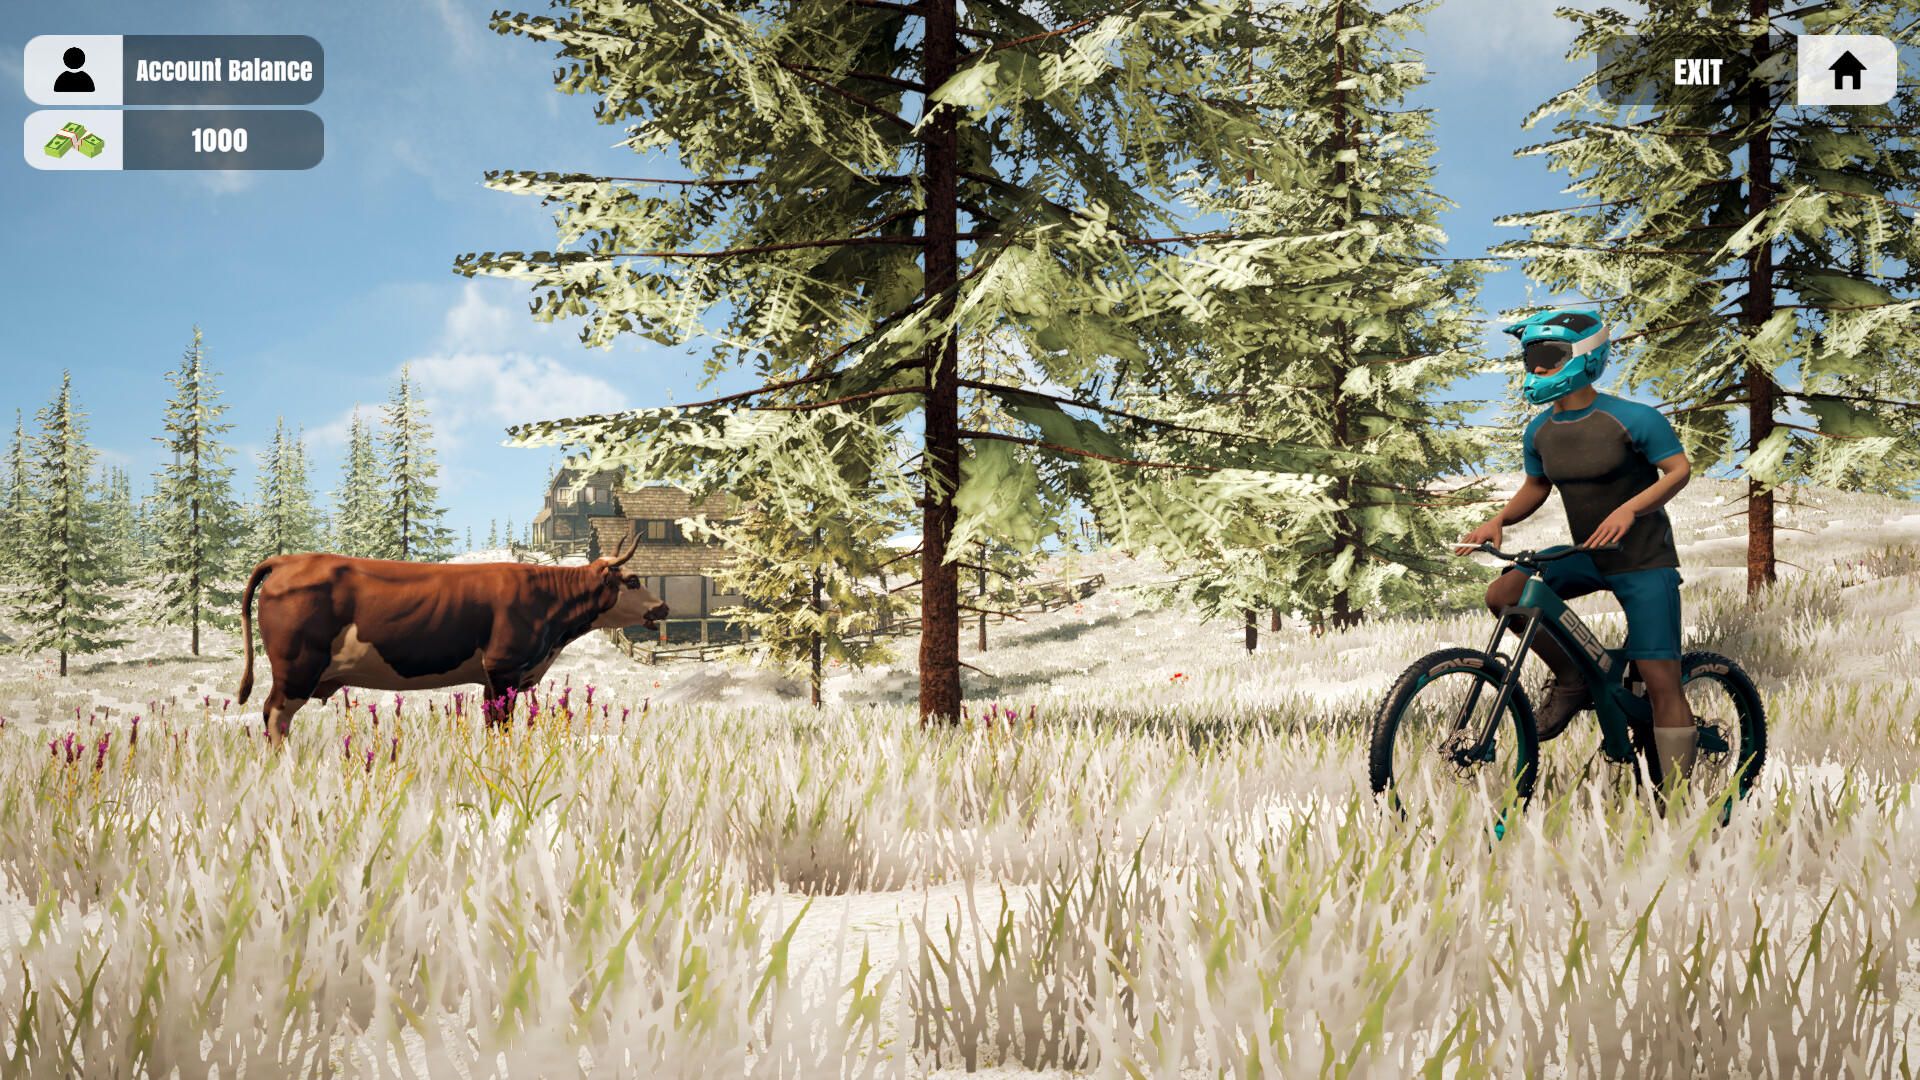 Mountain Bicycle Rider Simulatorのキャプチャ